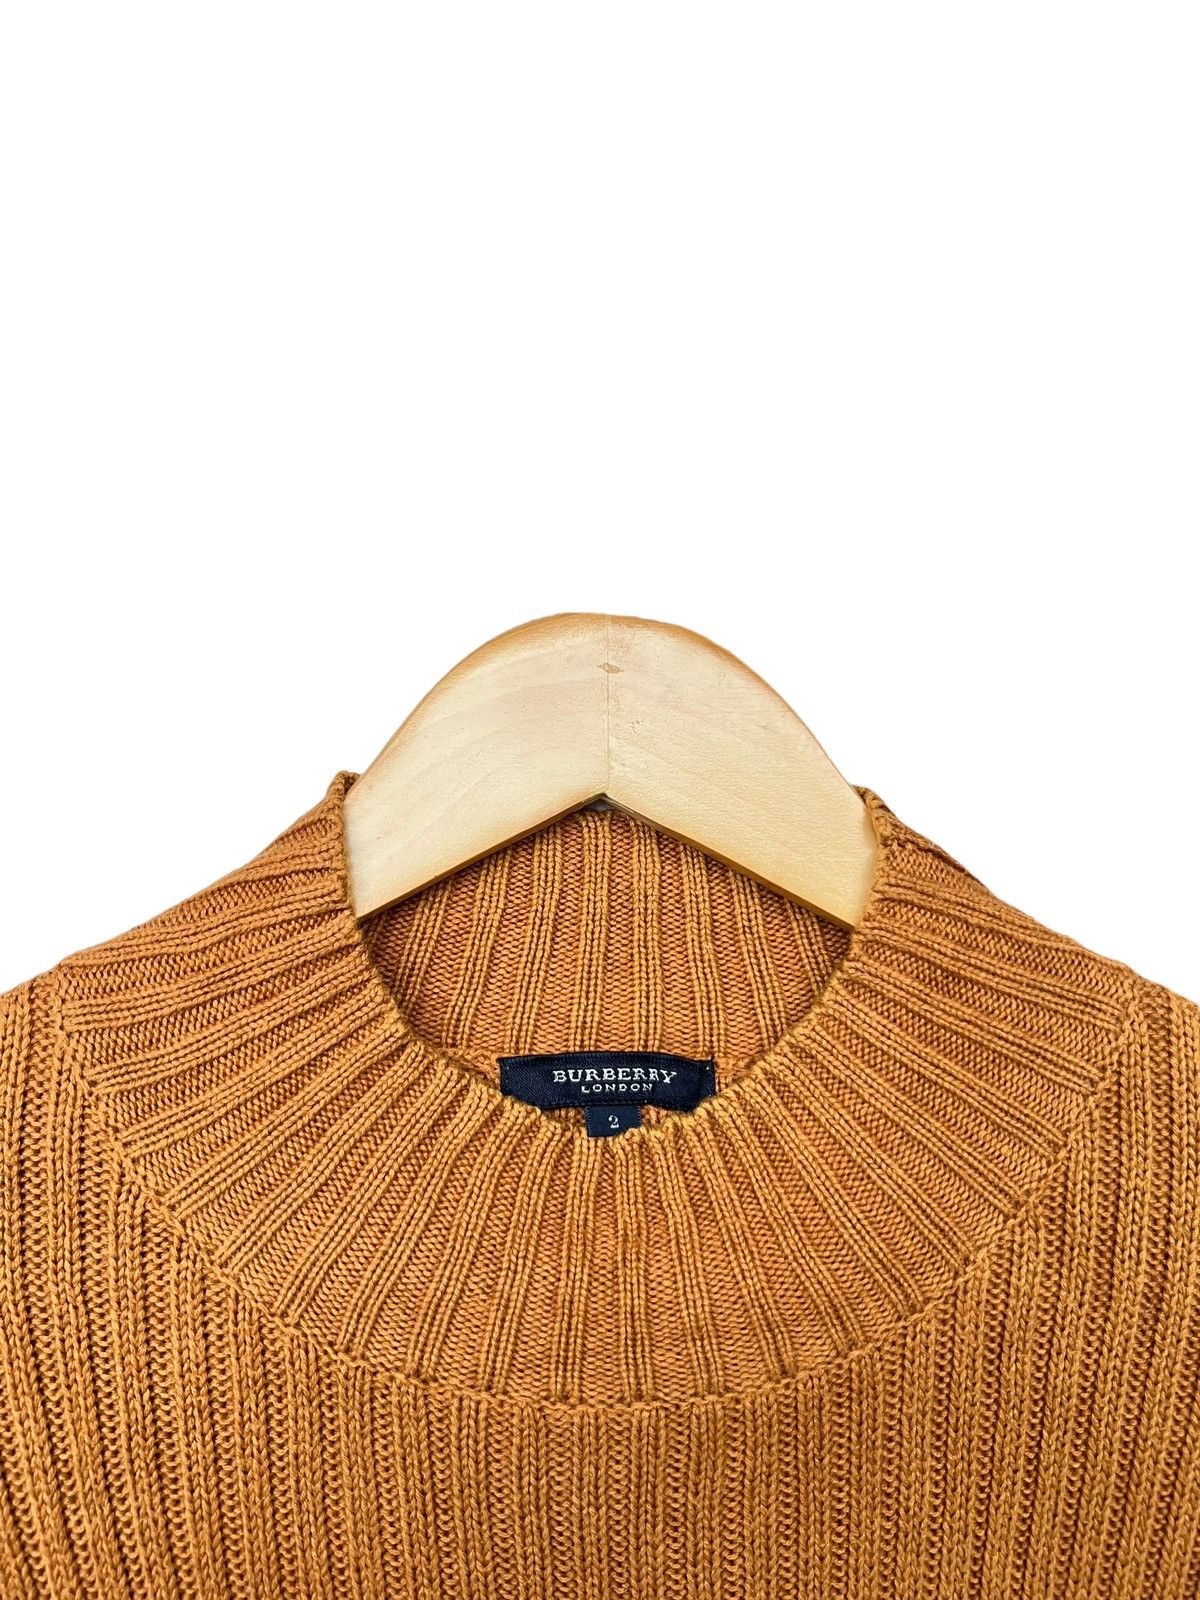 Vintage Burberry London Knitwear - 2